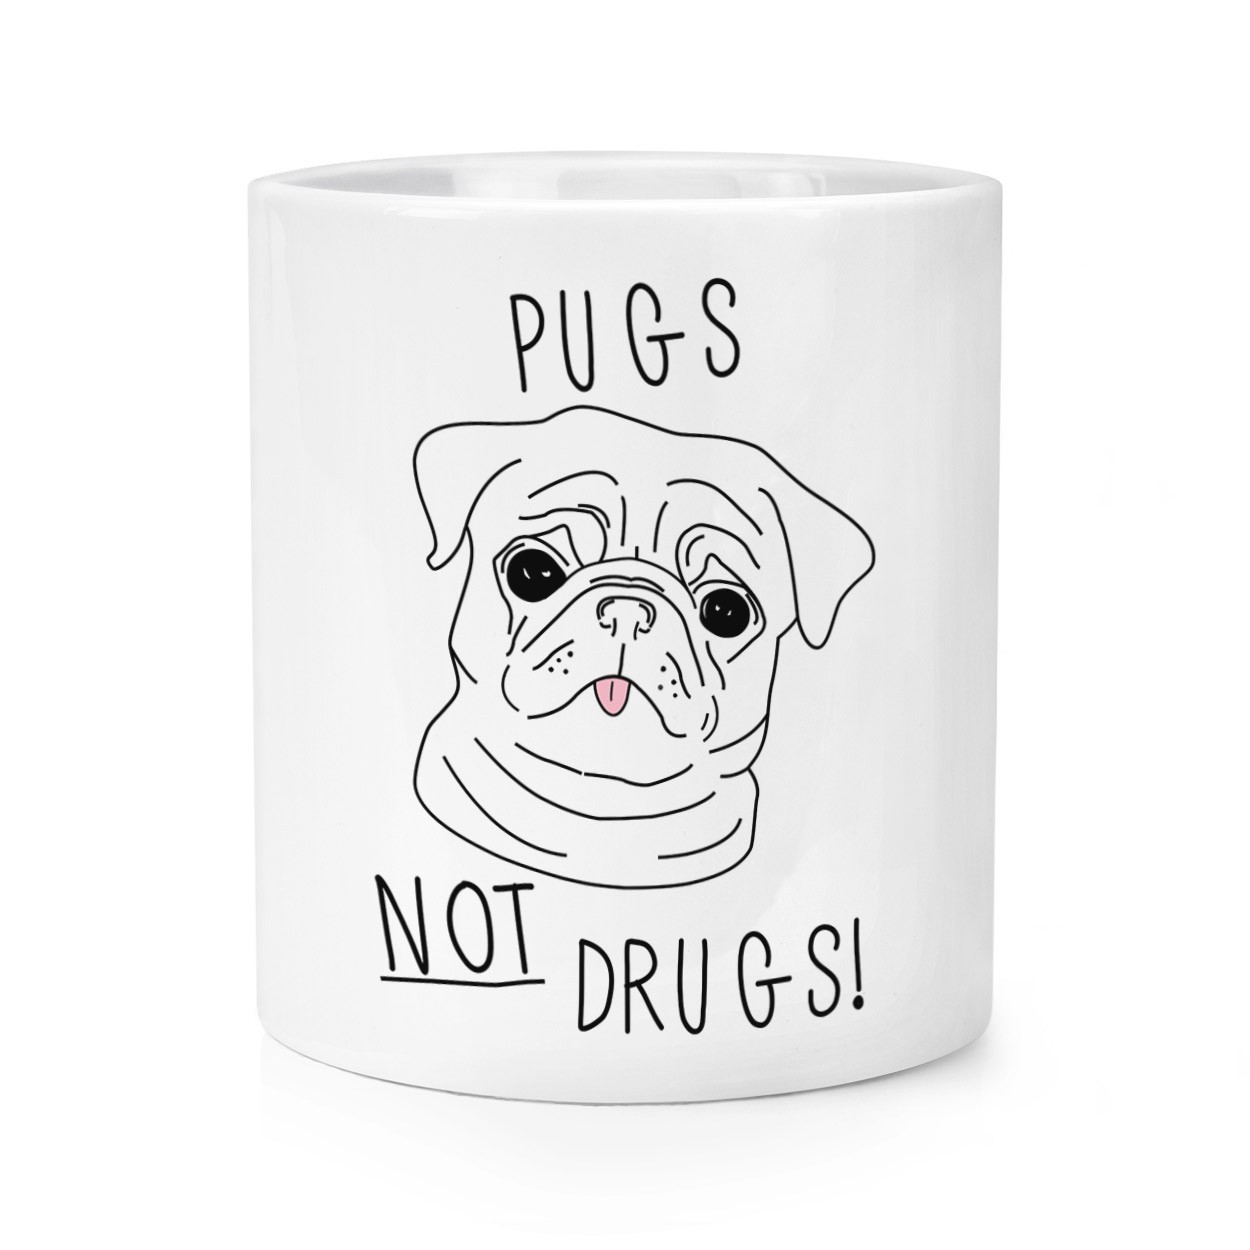 Pugs Not Drugs Makeup Brush Pencil Pot